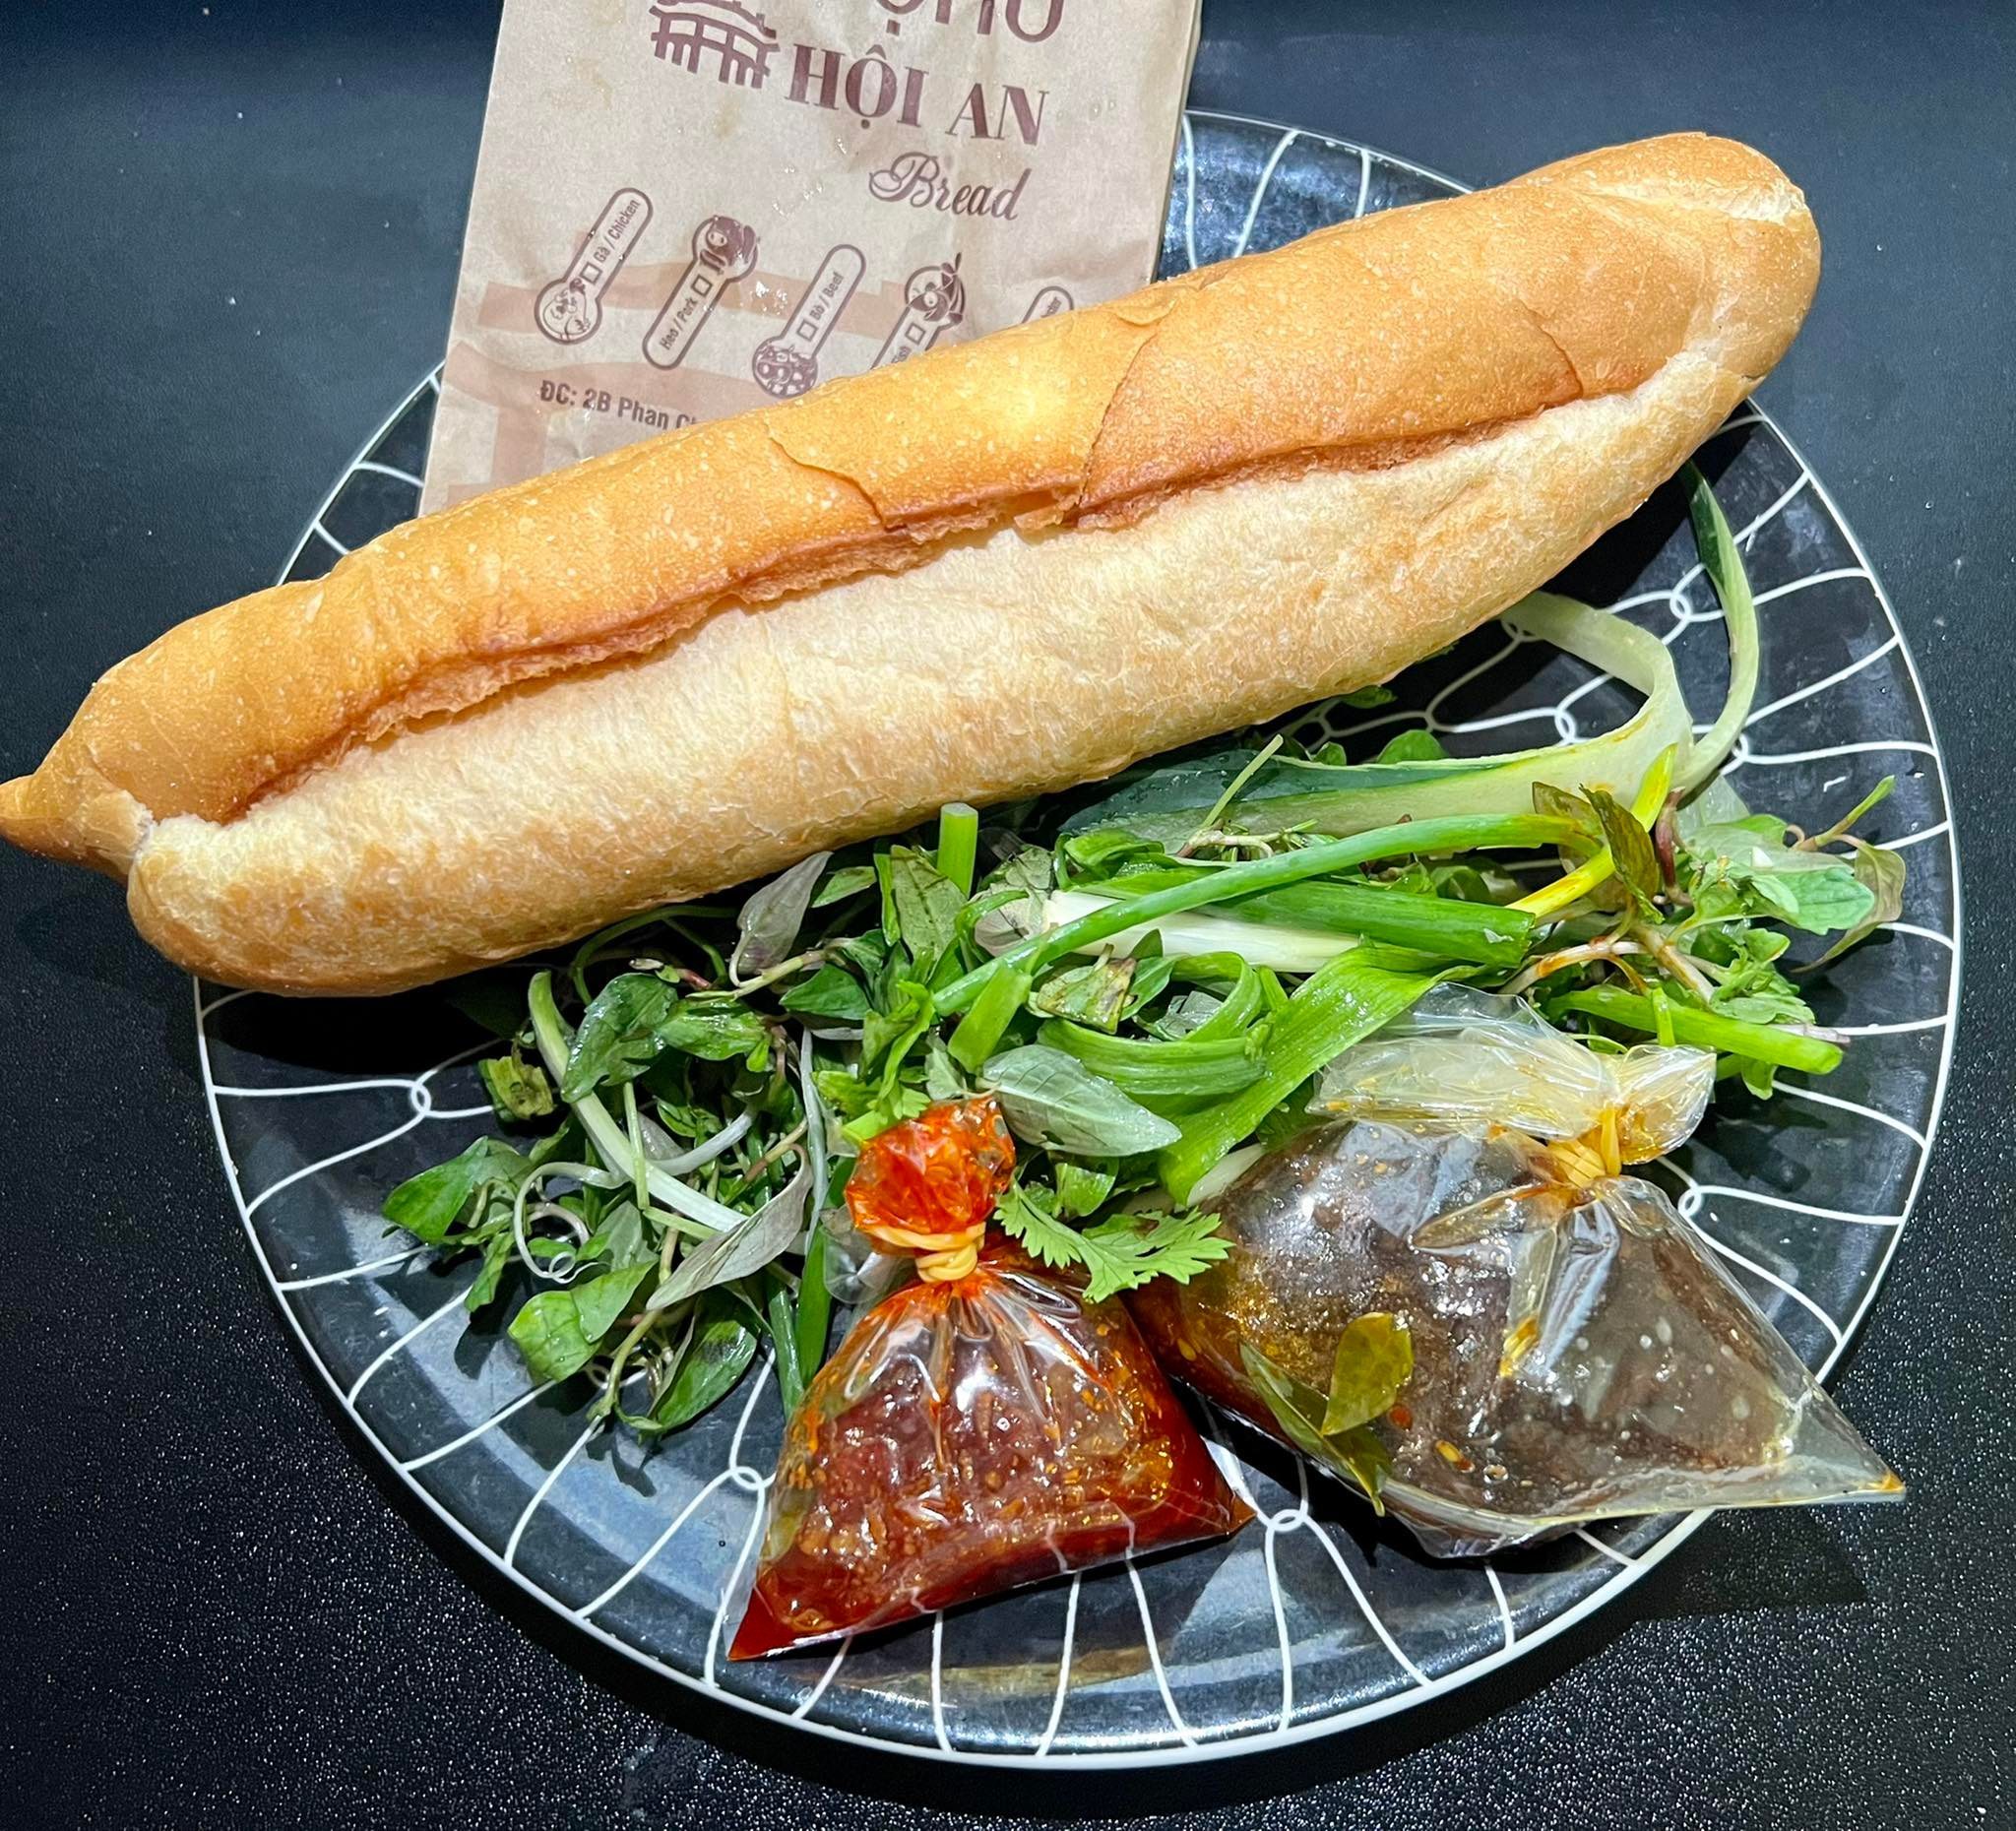 Bánh mì nổi tiếng Hội An 'đi' máy bay ra Hà Nội, giá 60 ngàn/ổ vẫn 'cháy hàng'